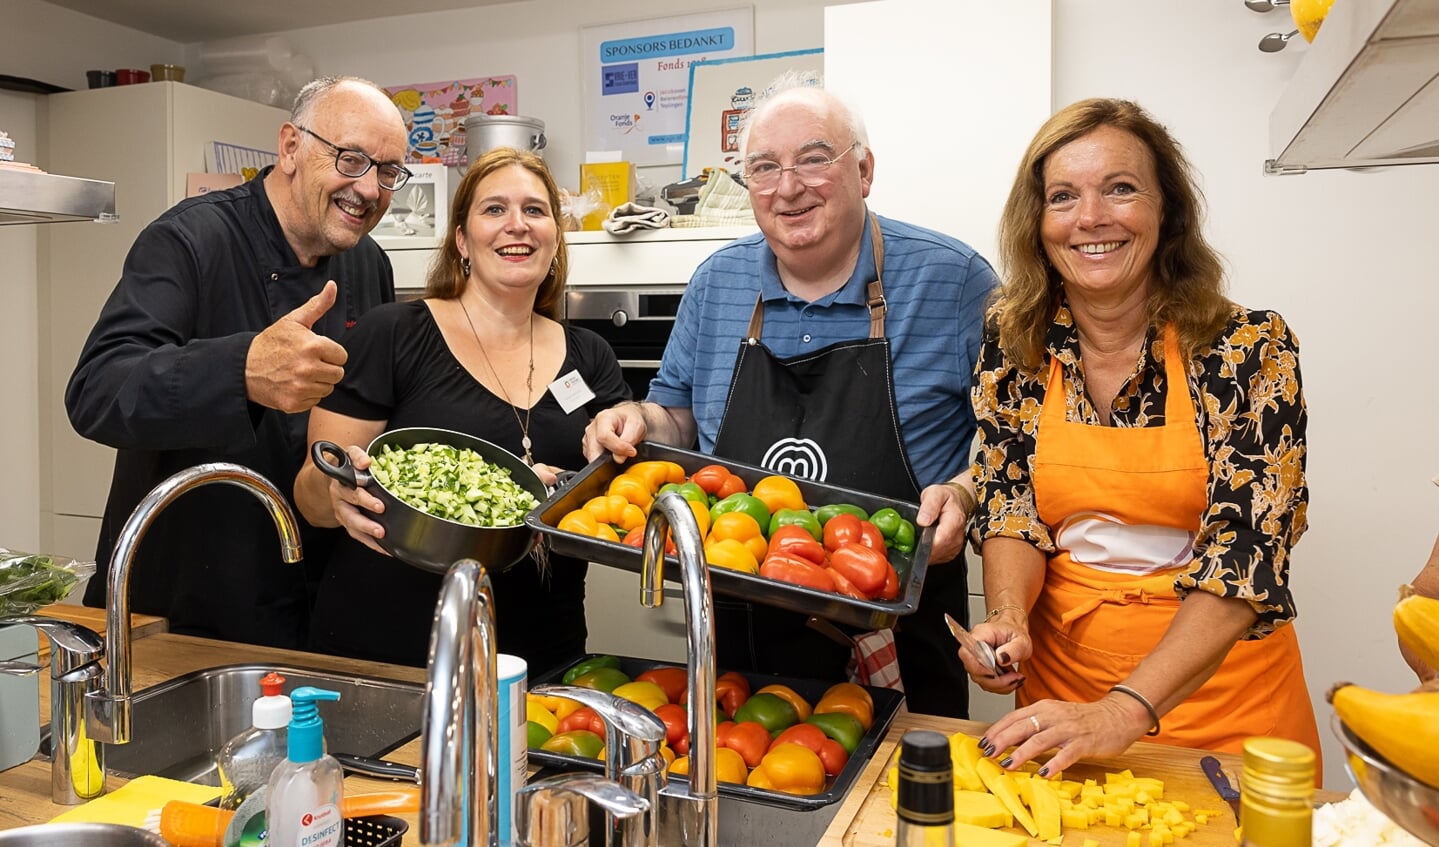 Wethouder Wietsma (r) bezoekt de Spelewey: "Samen koken en eten is een mooi voorbeeld van elkaar ontmoeten". 